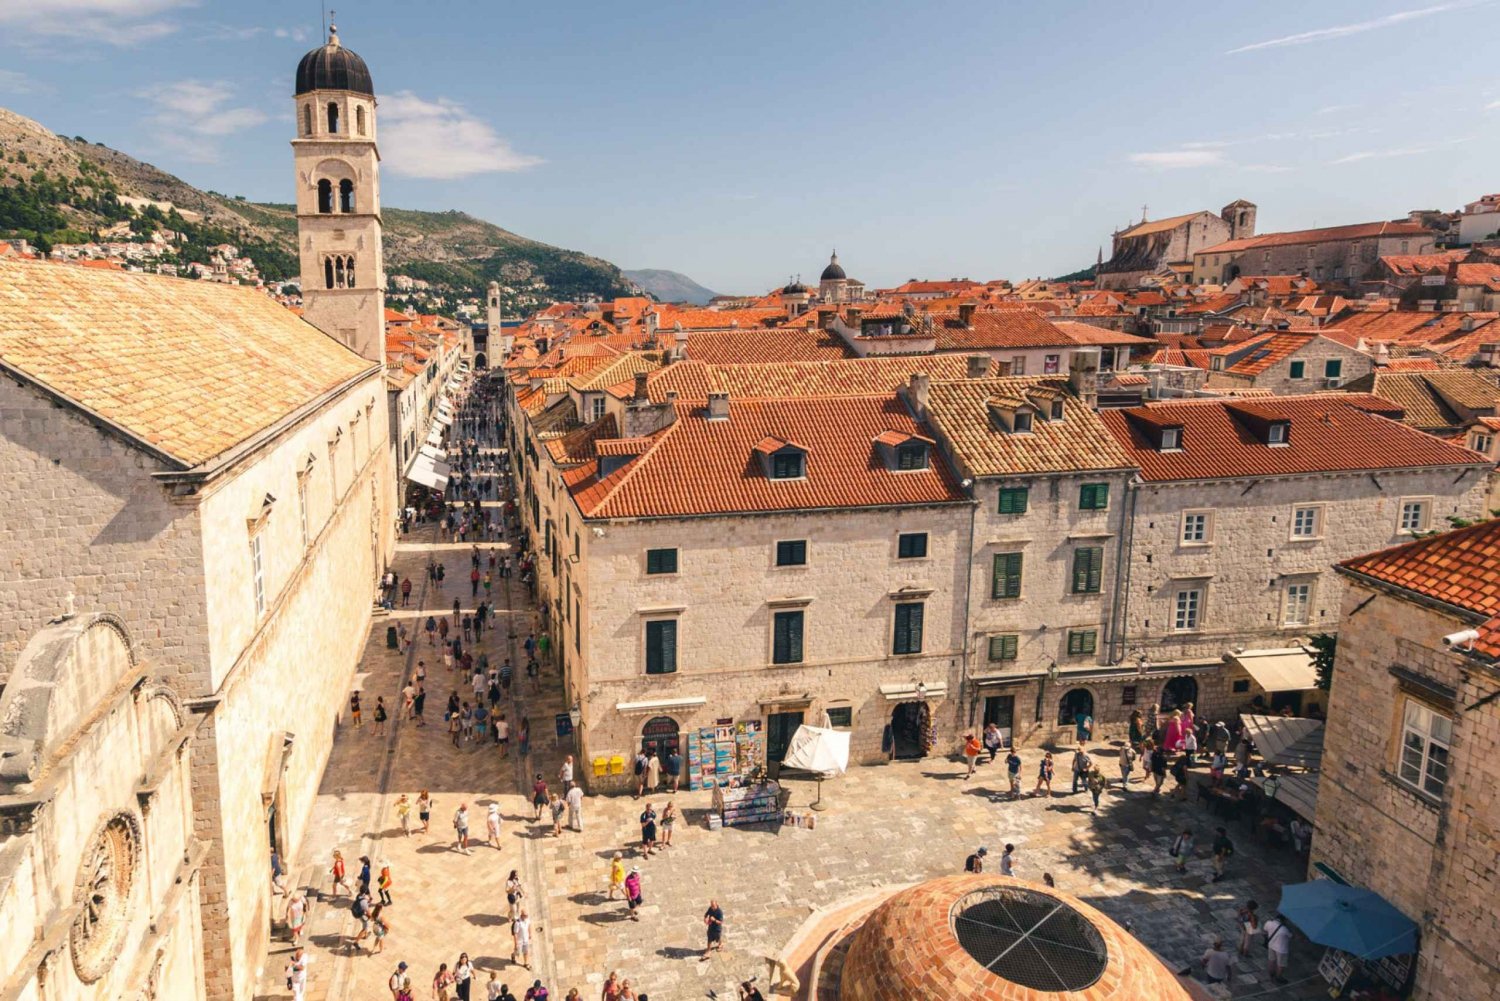 Dubrovnik Full-Day Tour from Split or Trogir